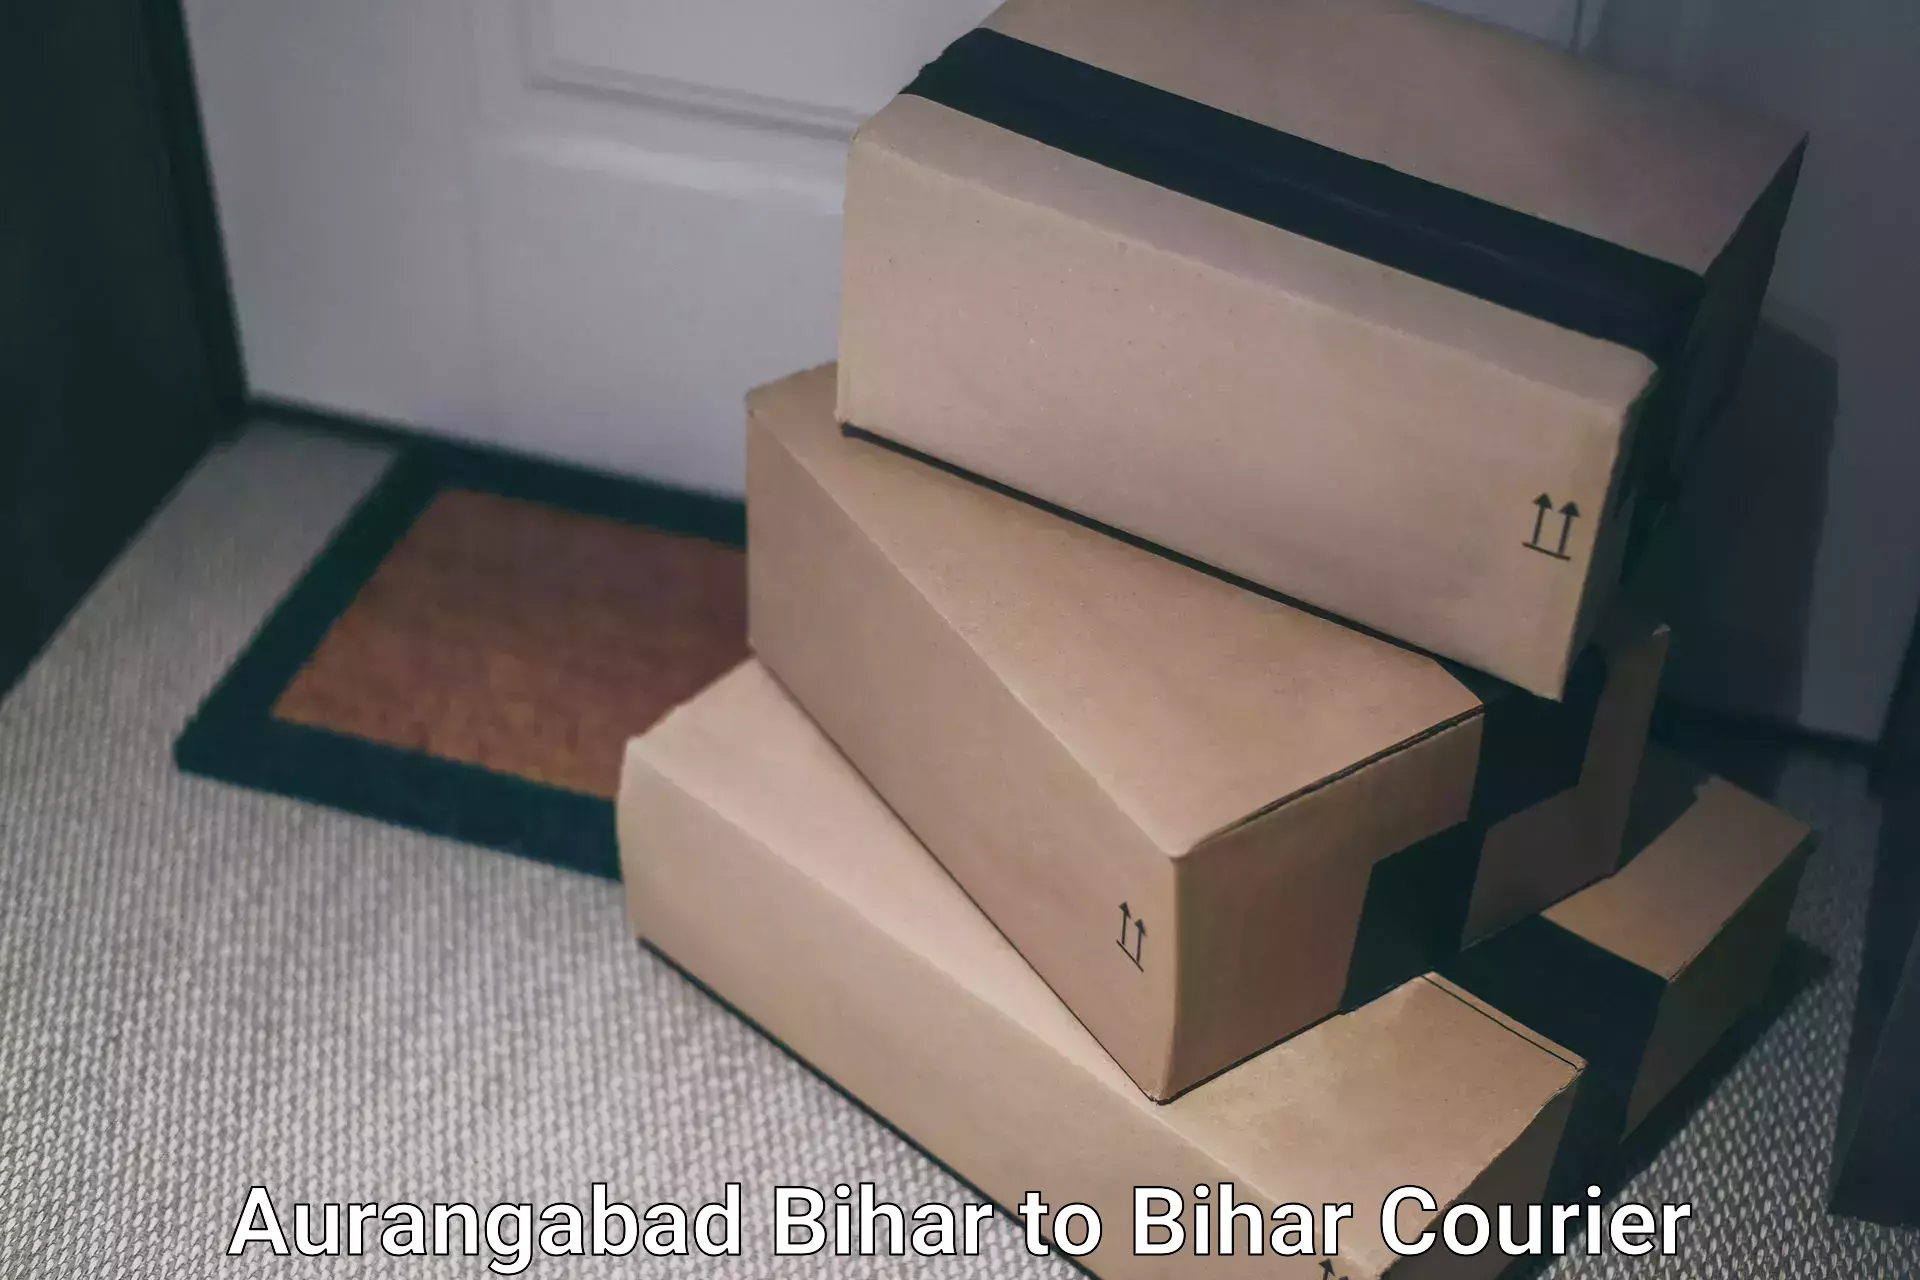 Flexible delivery schedules in Aurangabad Bihar to Dhaka